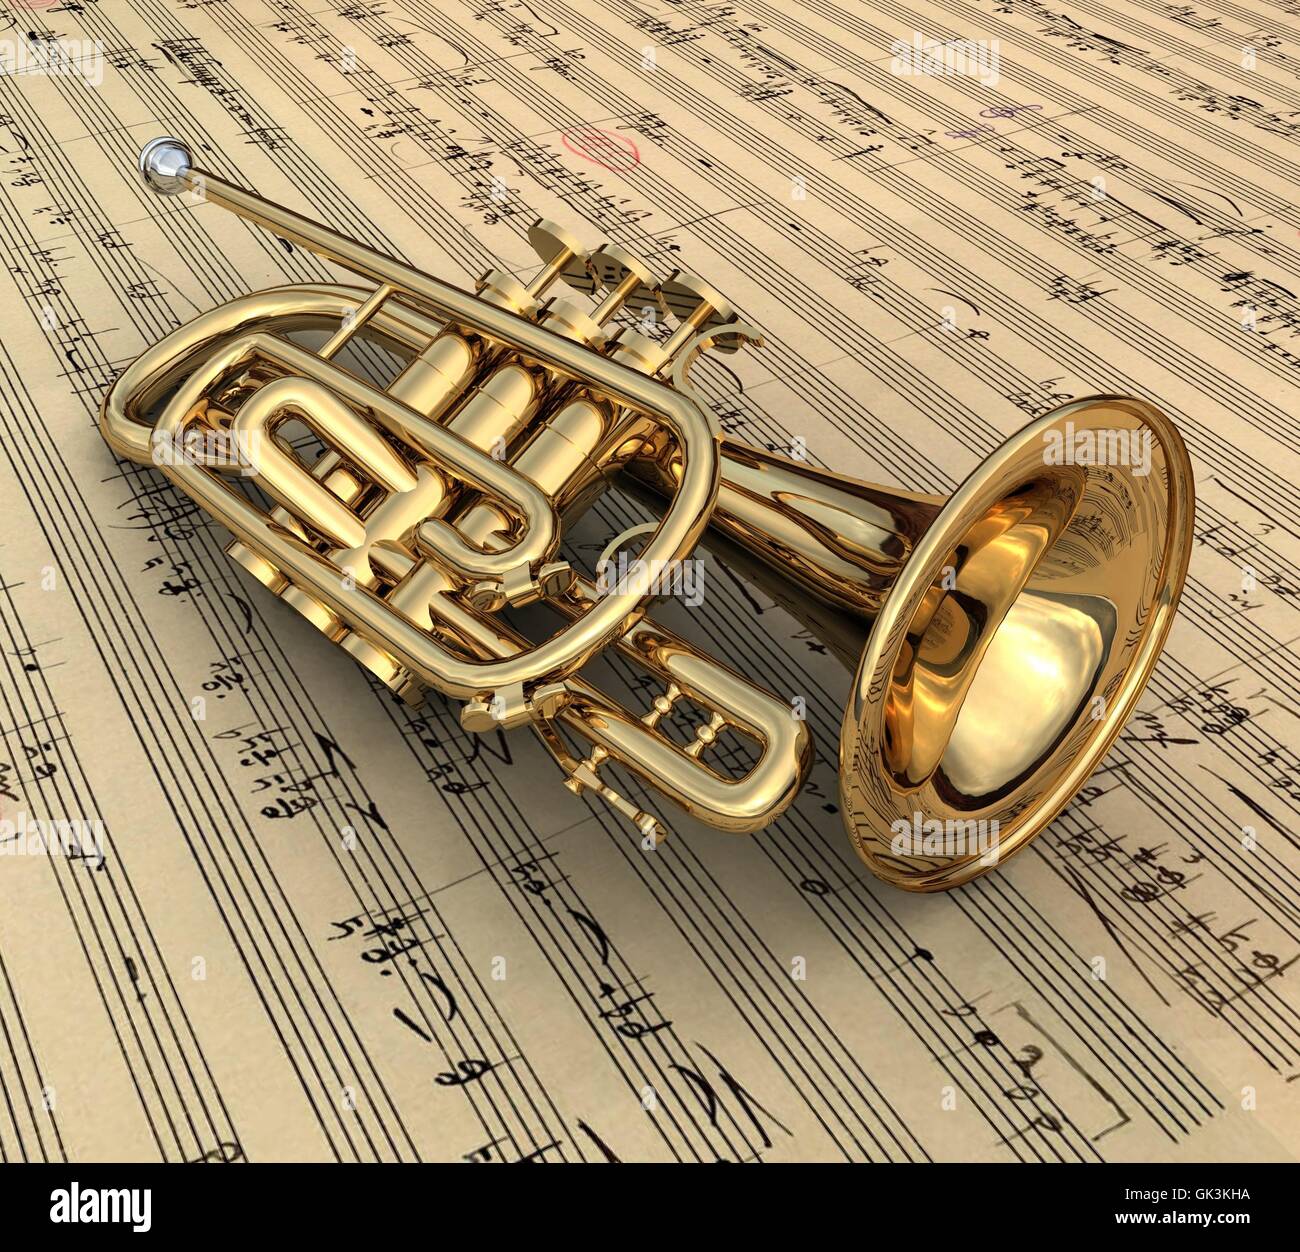 trumpet Stock Photo